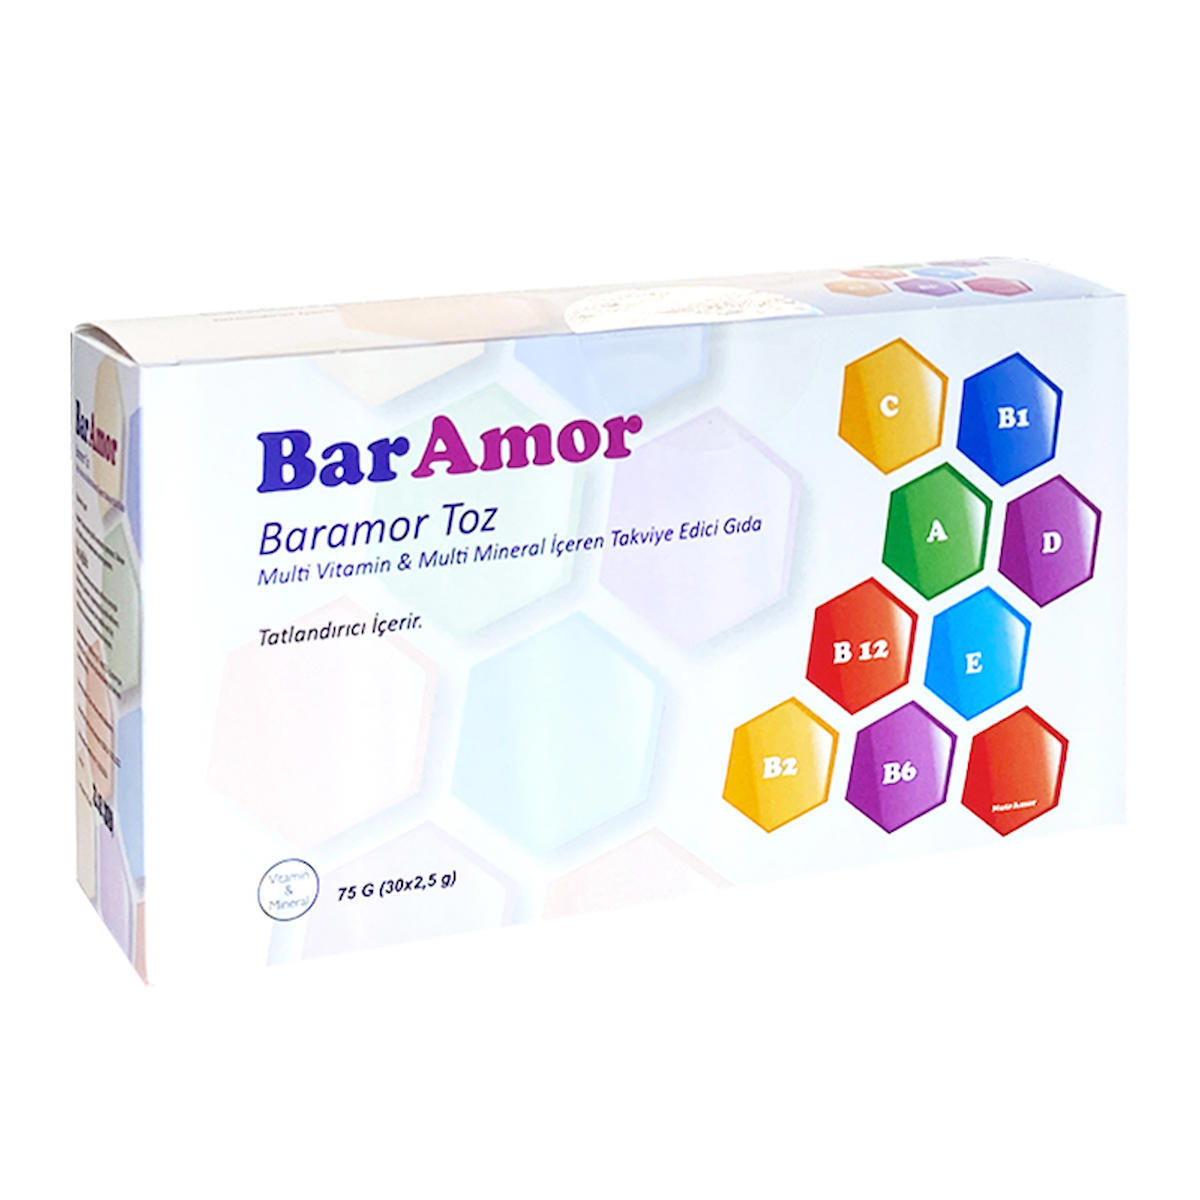 Baramor Sade Unisex Vitamin 30 Tablet